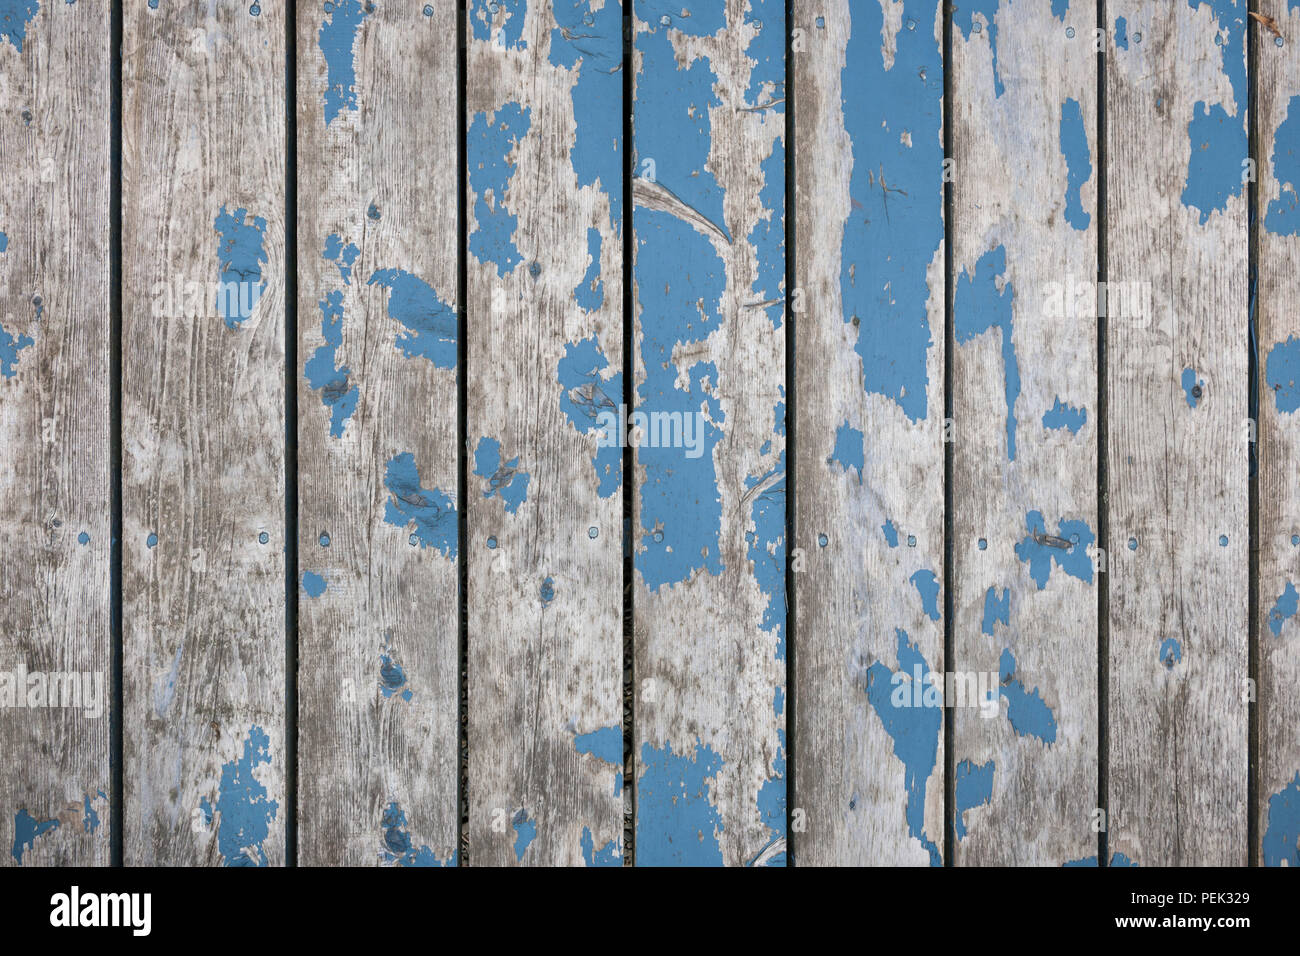 Im Hintergrund der verwitterte Holzbretter mit Spuren von alte blaue Farbe Stockfoto